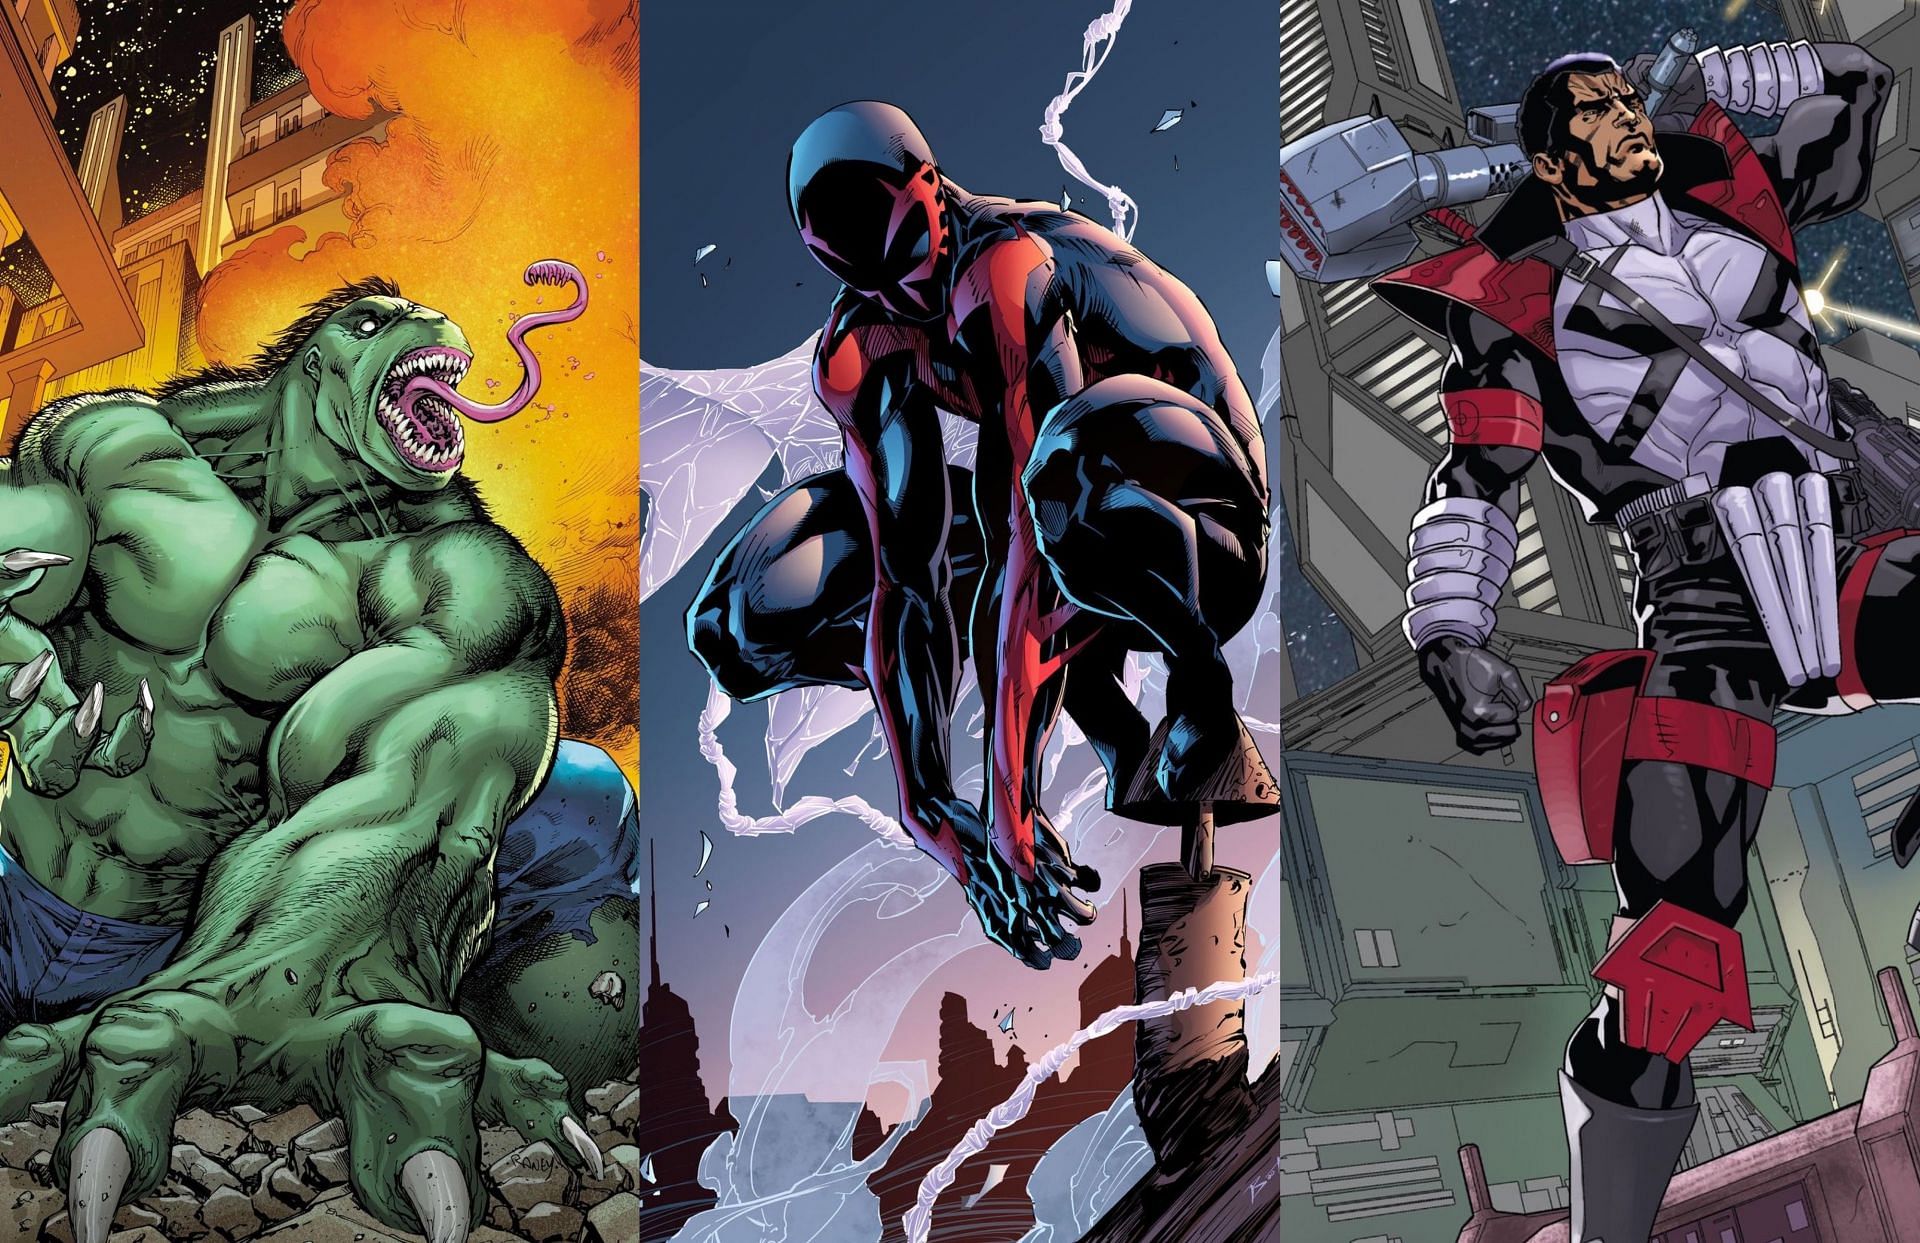 Hulk 2099/Spider-Man 2099/Punisher 2099 (Images via Marvel Comics)